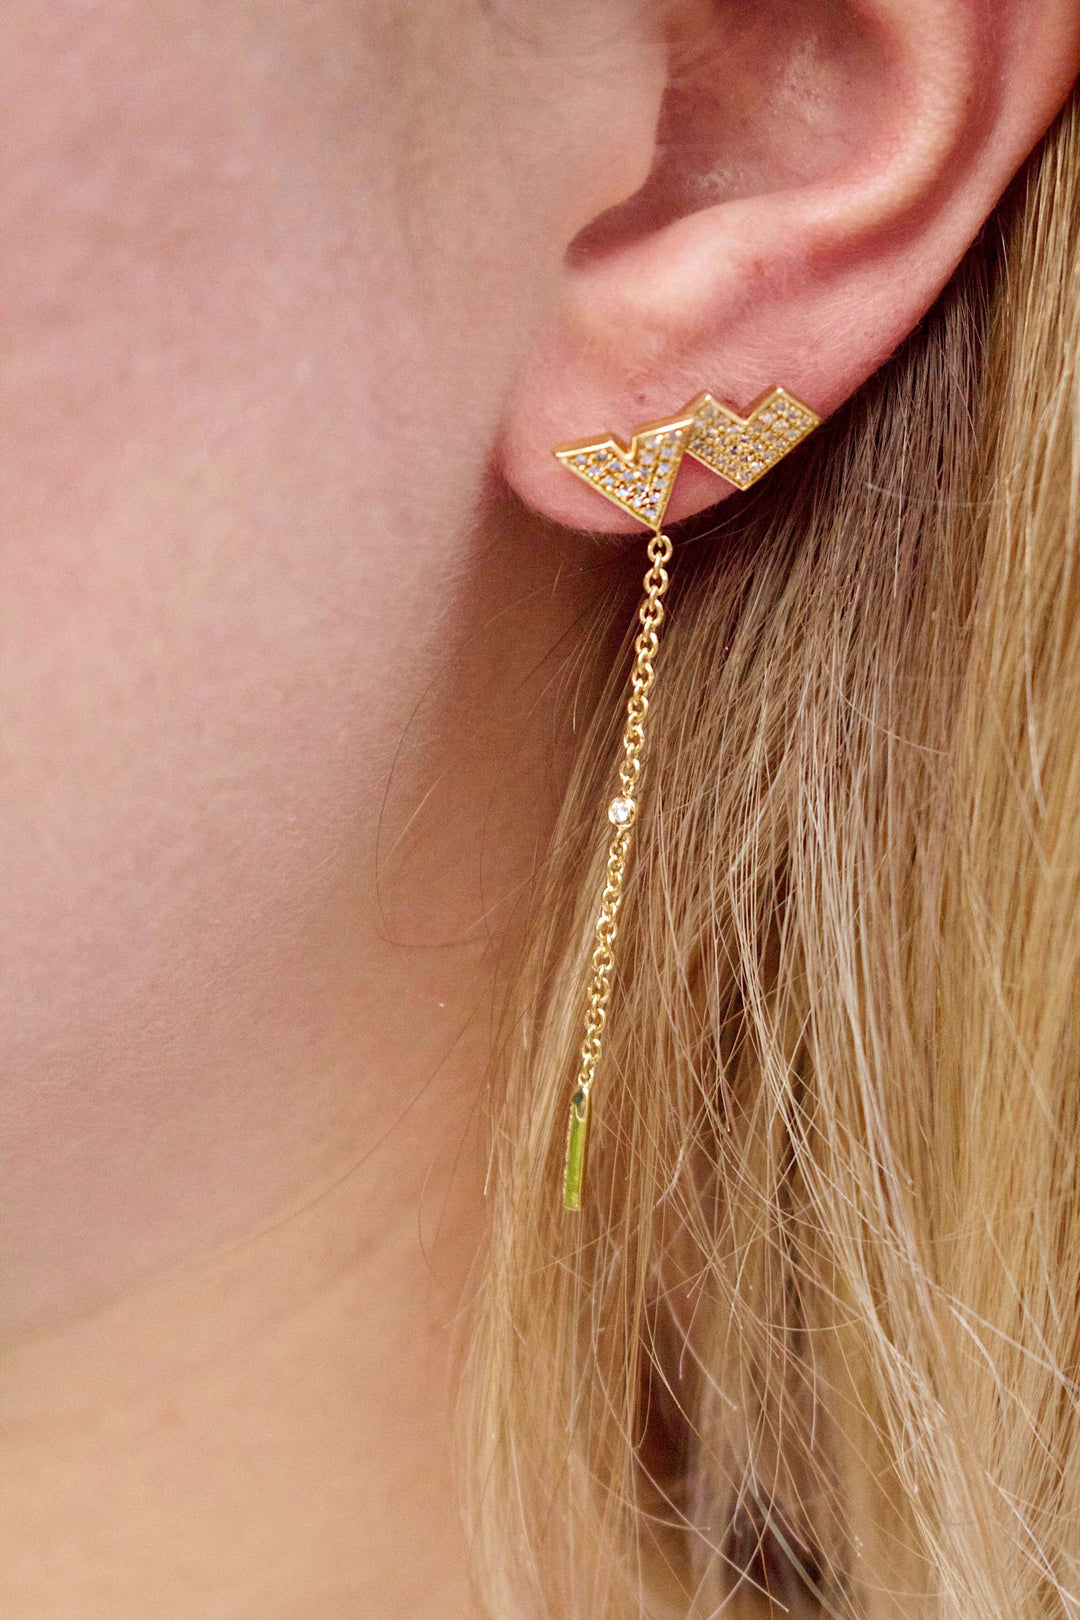 One Way Arrow Diamond Stud Earrings in 14K Yellow Gold Vermeil on Sterling Silver